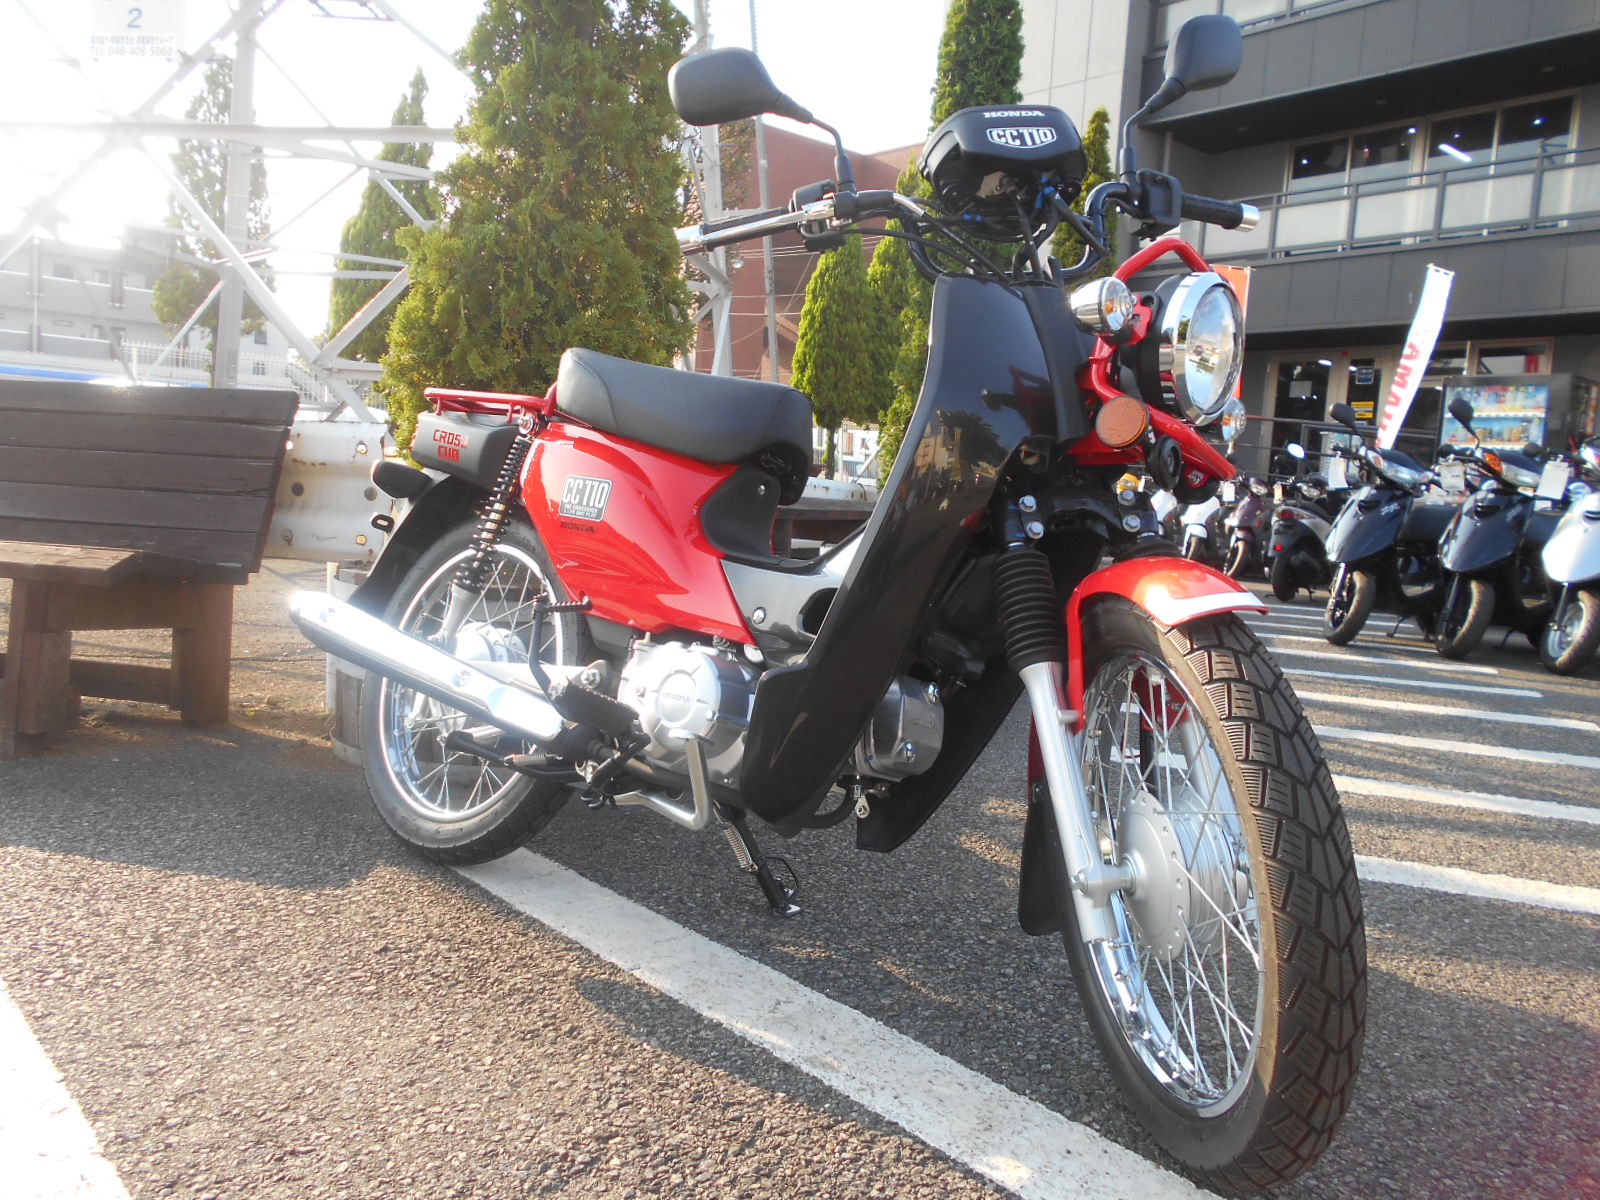 旧型クロスカブ 在庫ございます 最新情報 U Media ユーメディア 中古 バイク 新車バイク探しの決定版 神奈川 東京でバイク探すならユーメディア